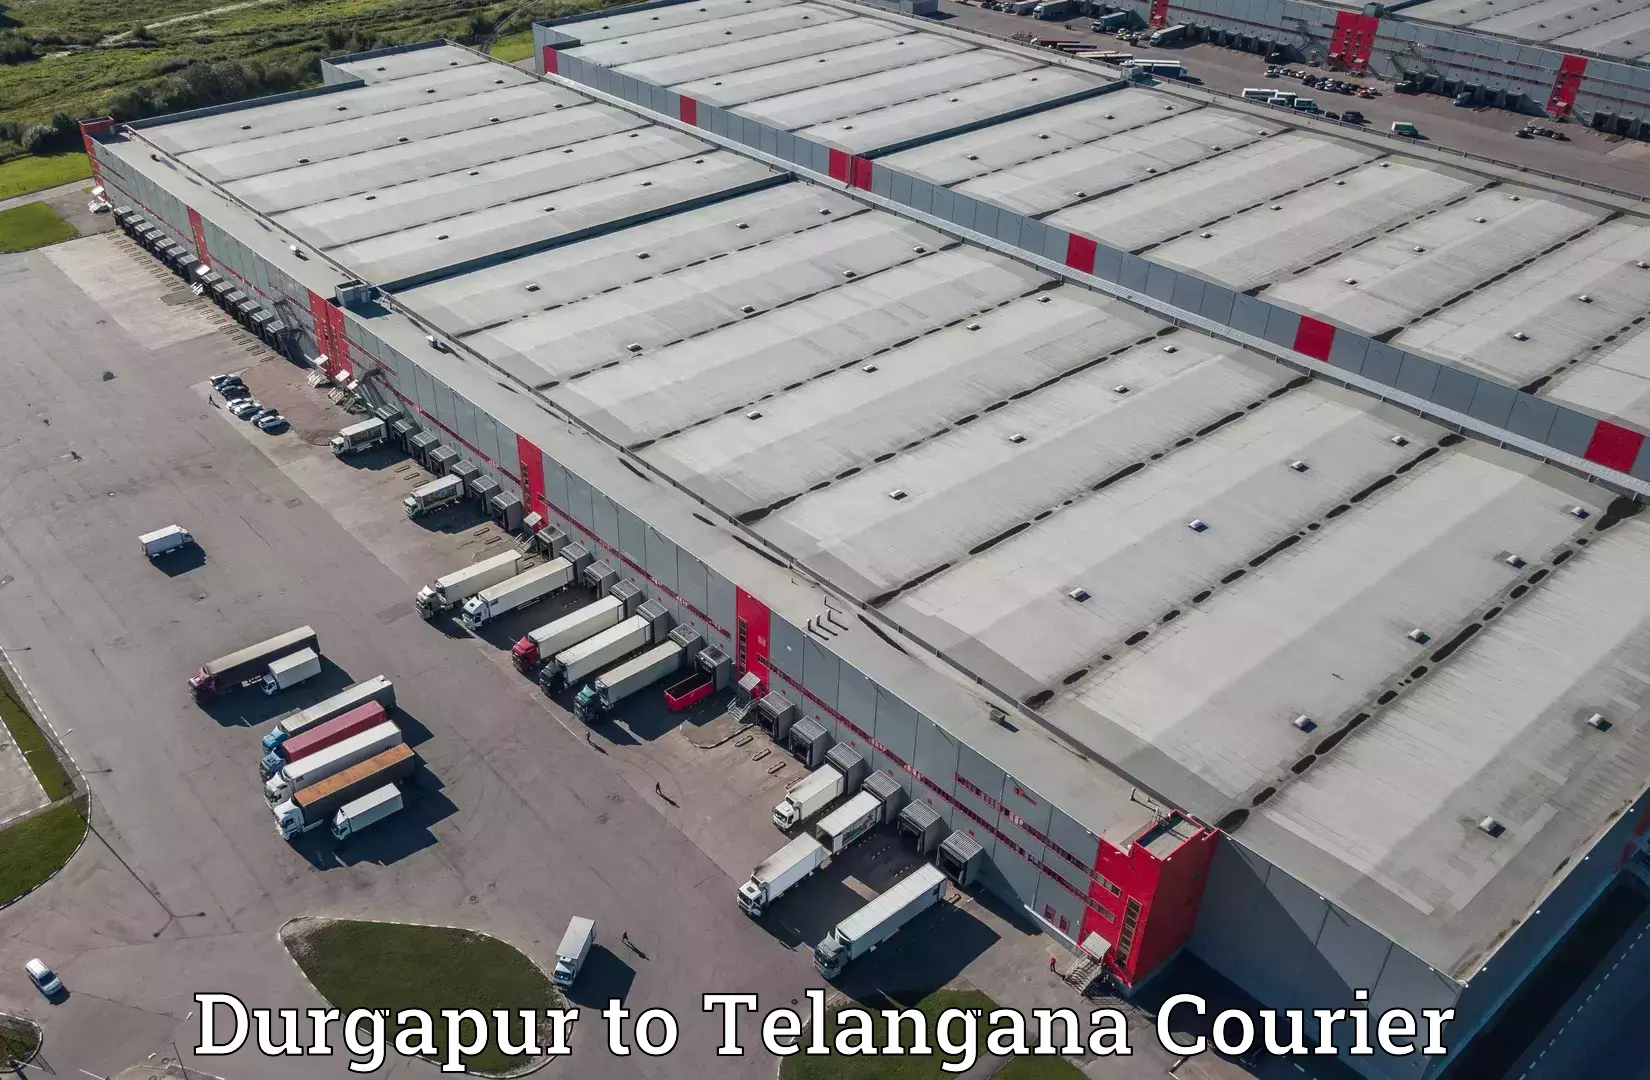 Cargo delivery service Durgapur to Yellandu